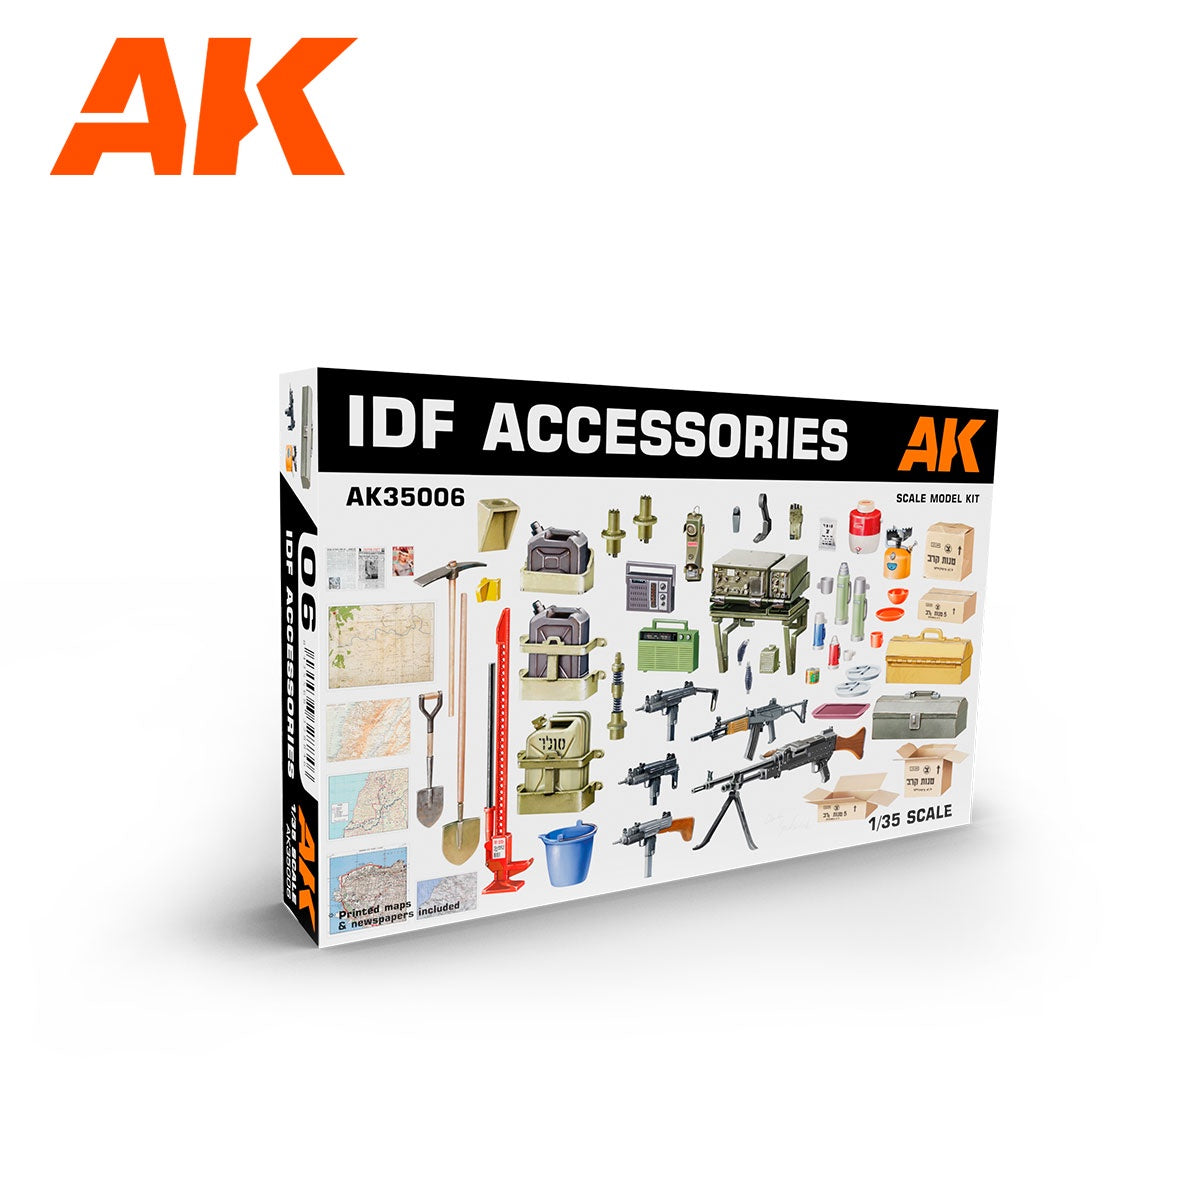 IDF Accessories 1/35 #AK35006 by AK Interactive